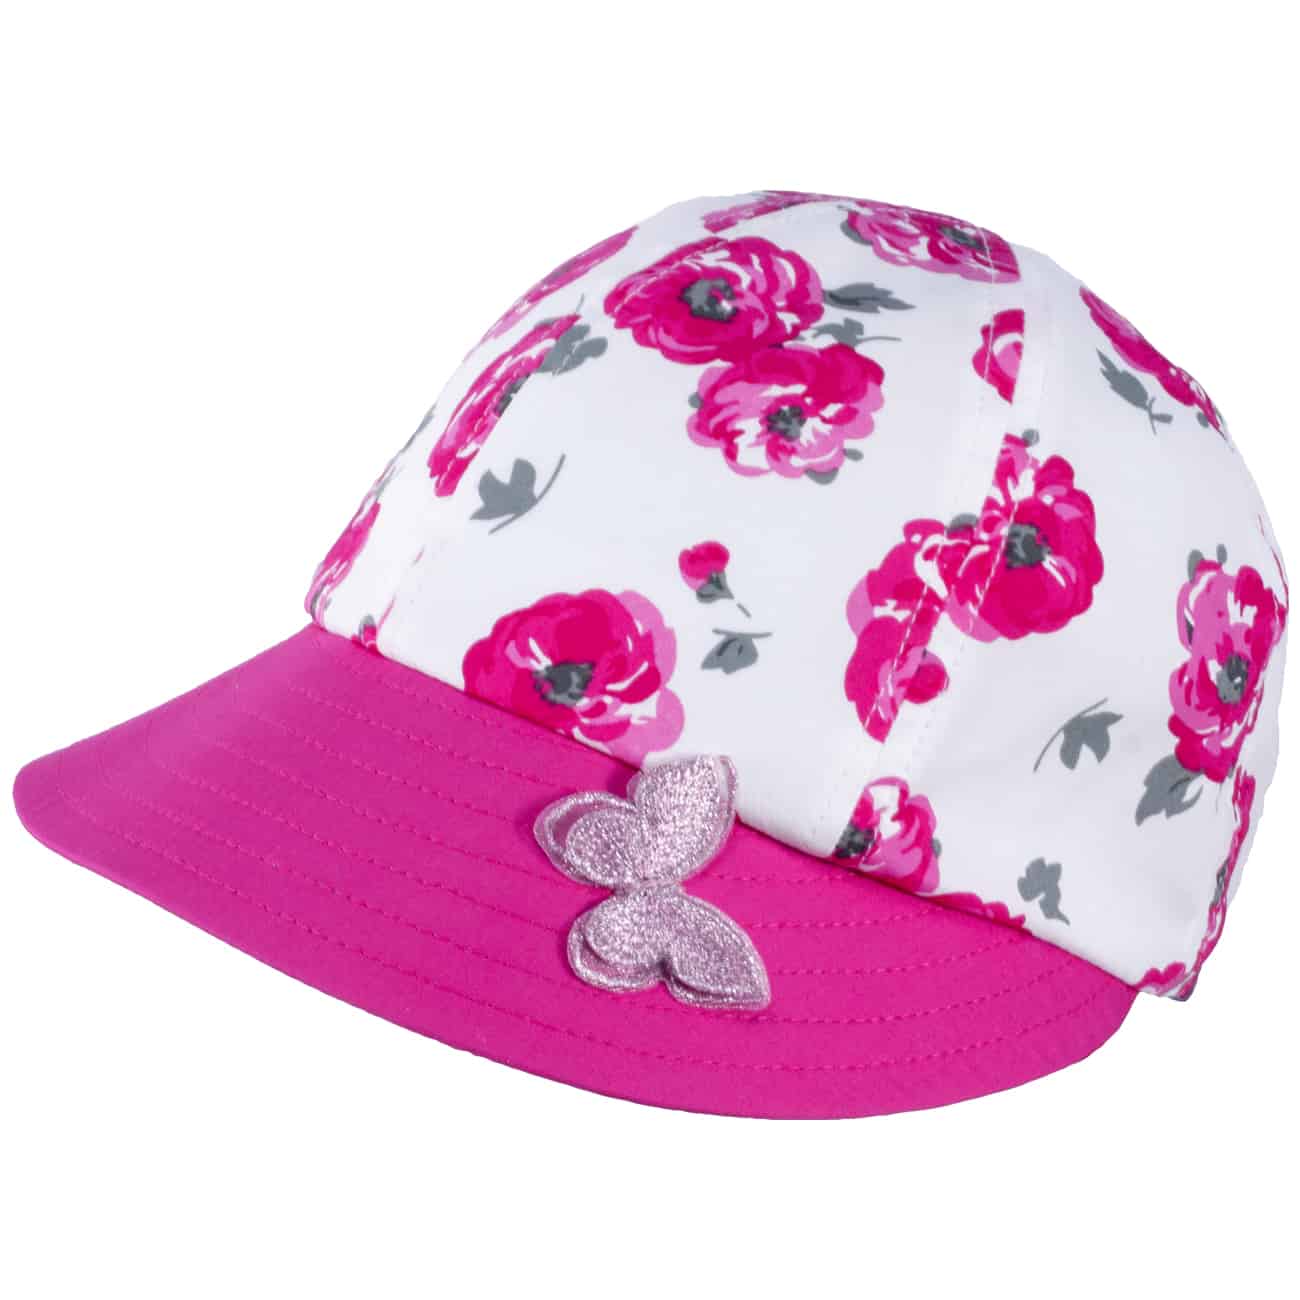 TUTU Kindermütze - Sommermütze - Kappe mit Blumenmuster und Schmetterling Applikation 